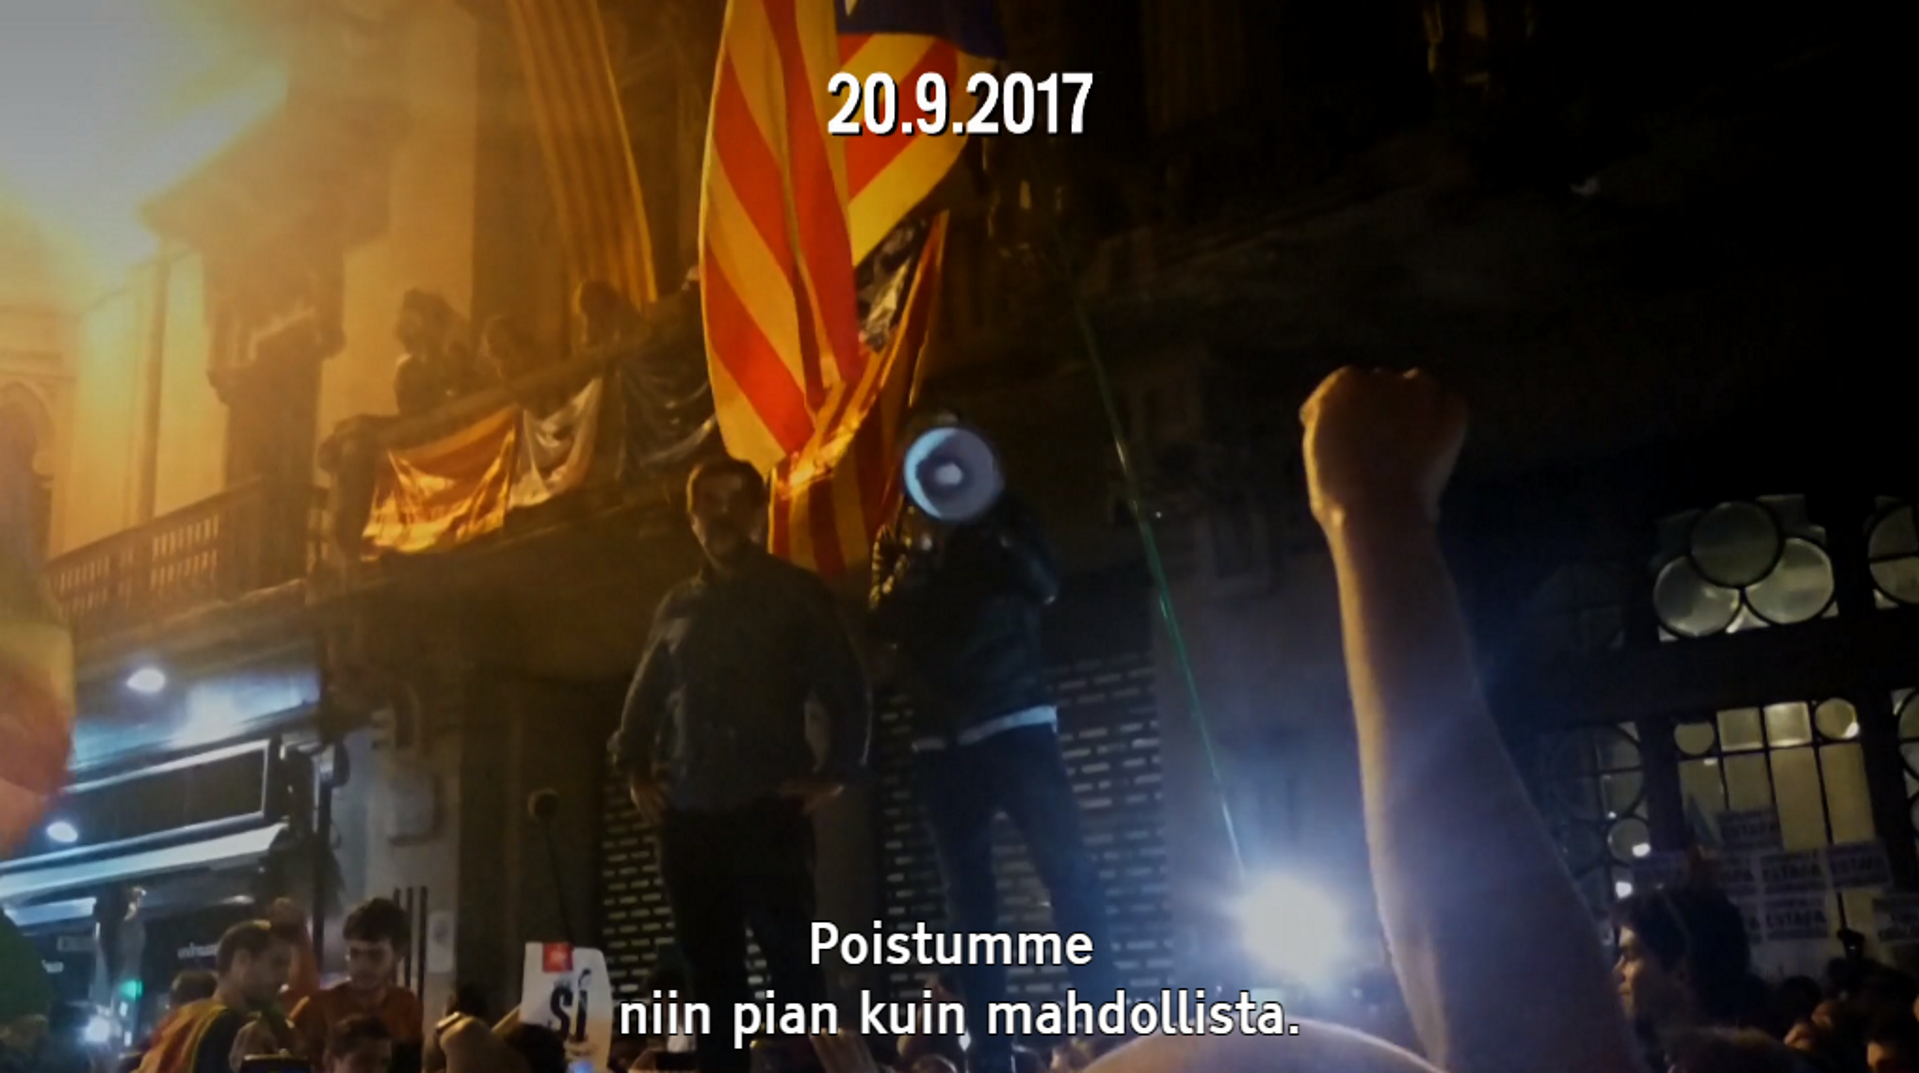 La televisió finlandesa, contundent en narrar "la revenja espanyola" a Catalunya